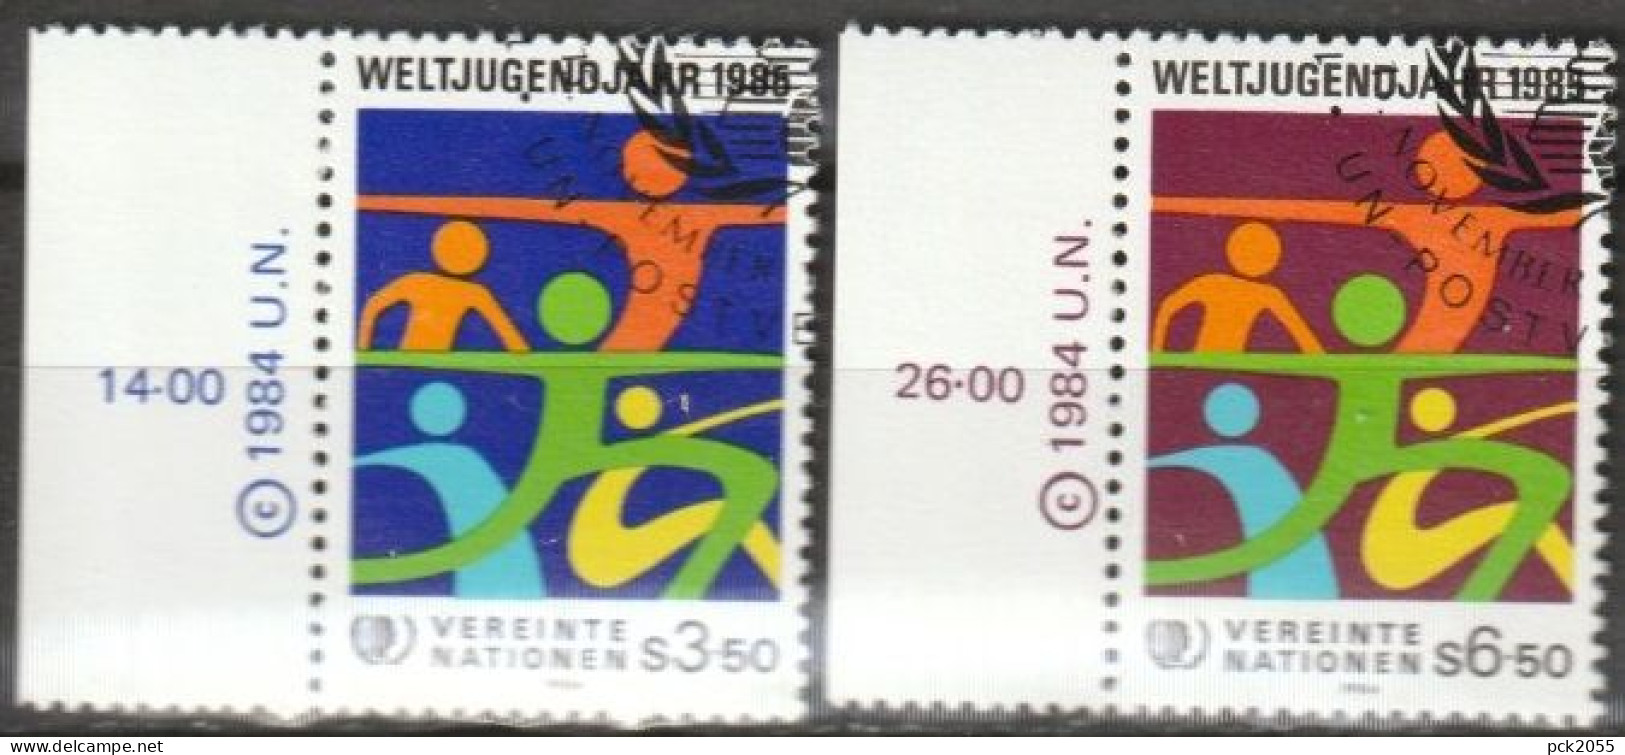 UNO Wien 1984 MiNr.45-46 O Gest. Internationales Jahr Der Jugend ( 2223) - Used Stamps